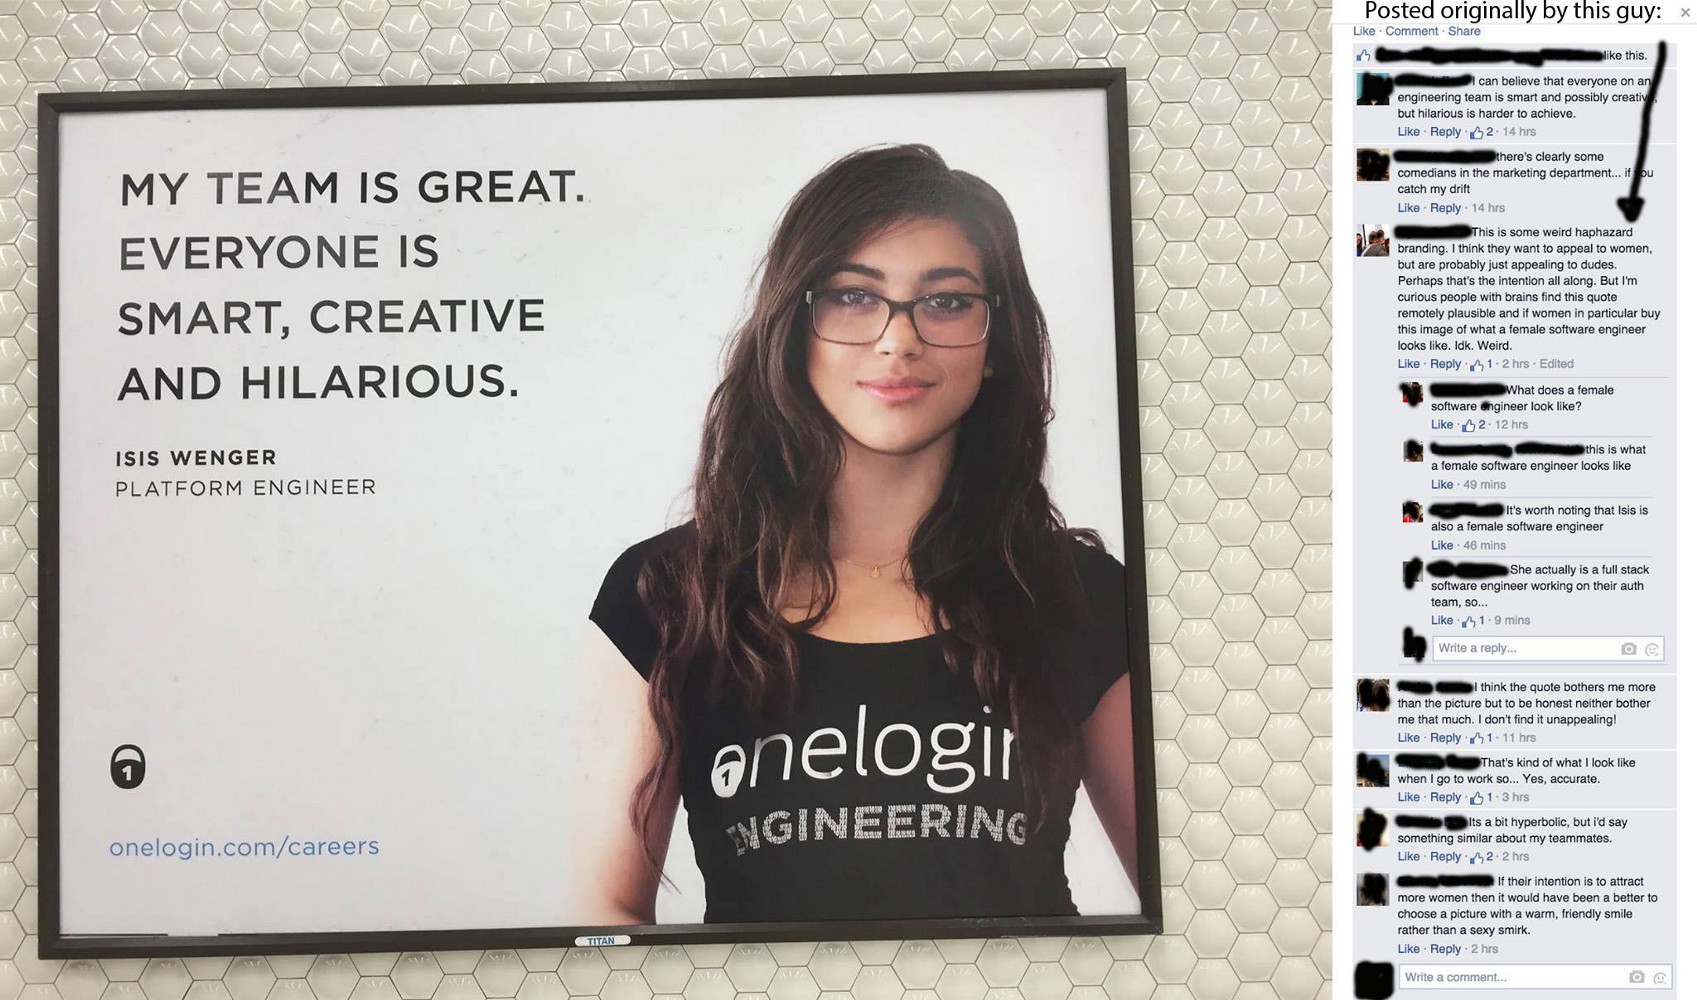 OneLogin ad backlash